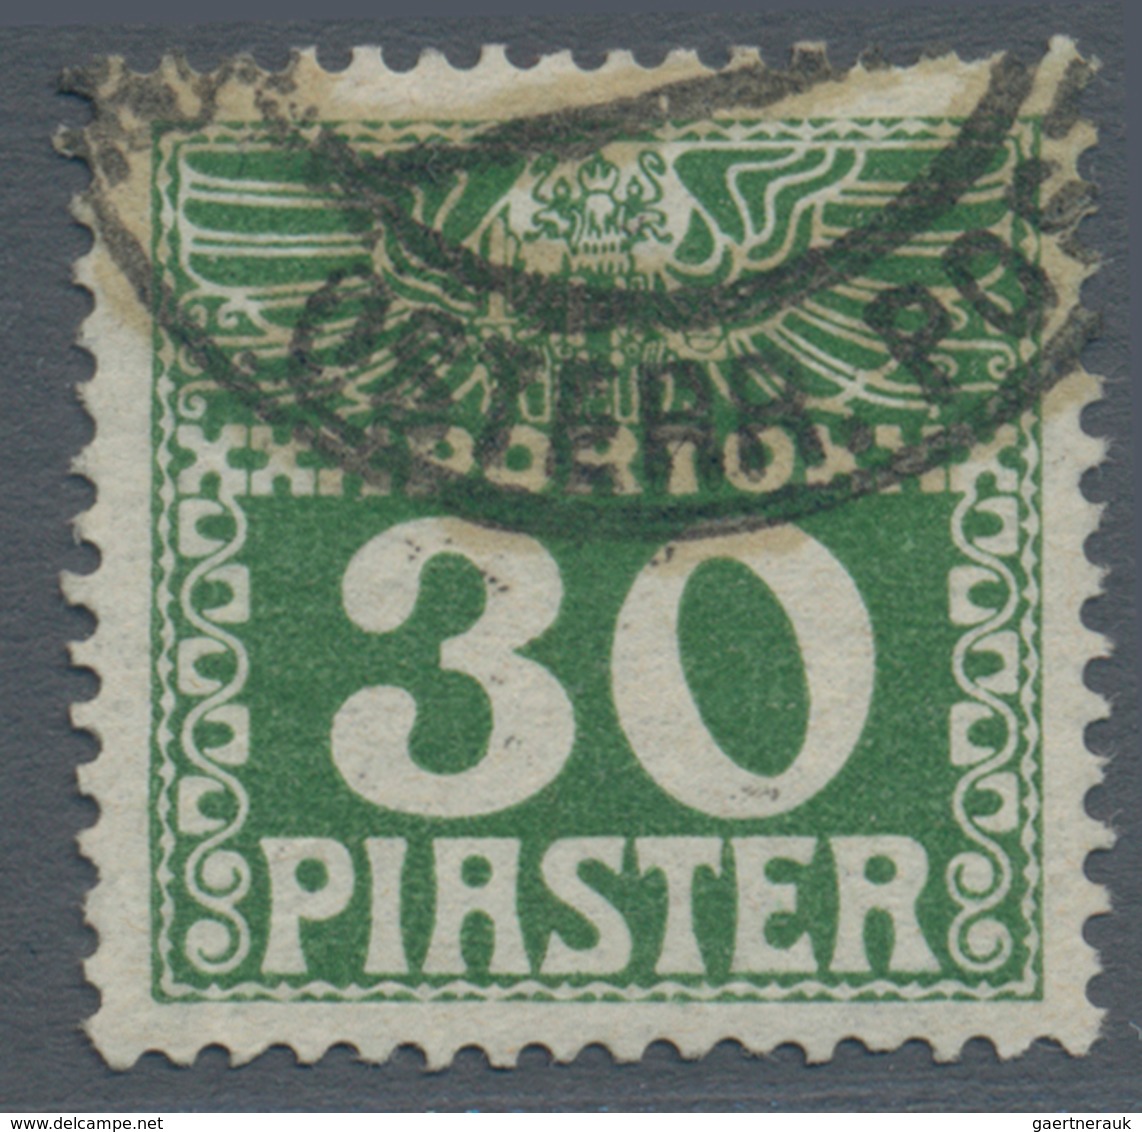 Österreichische Post in der Levante - Portomarken: 1908, ¼ Piaster bis 30 Piaster in b-Farbe dunkelg